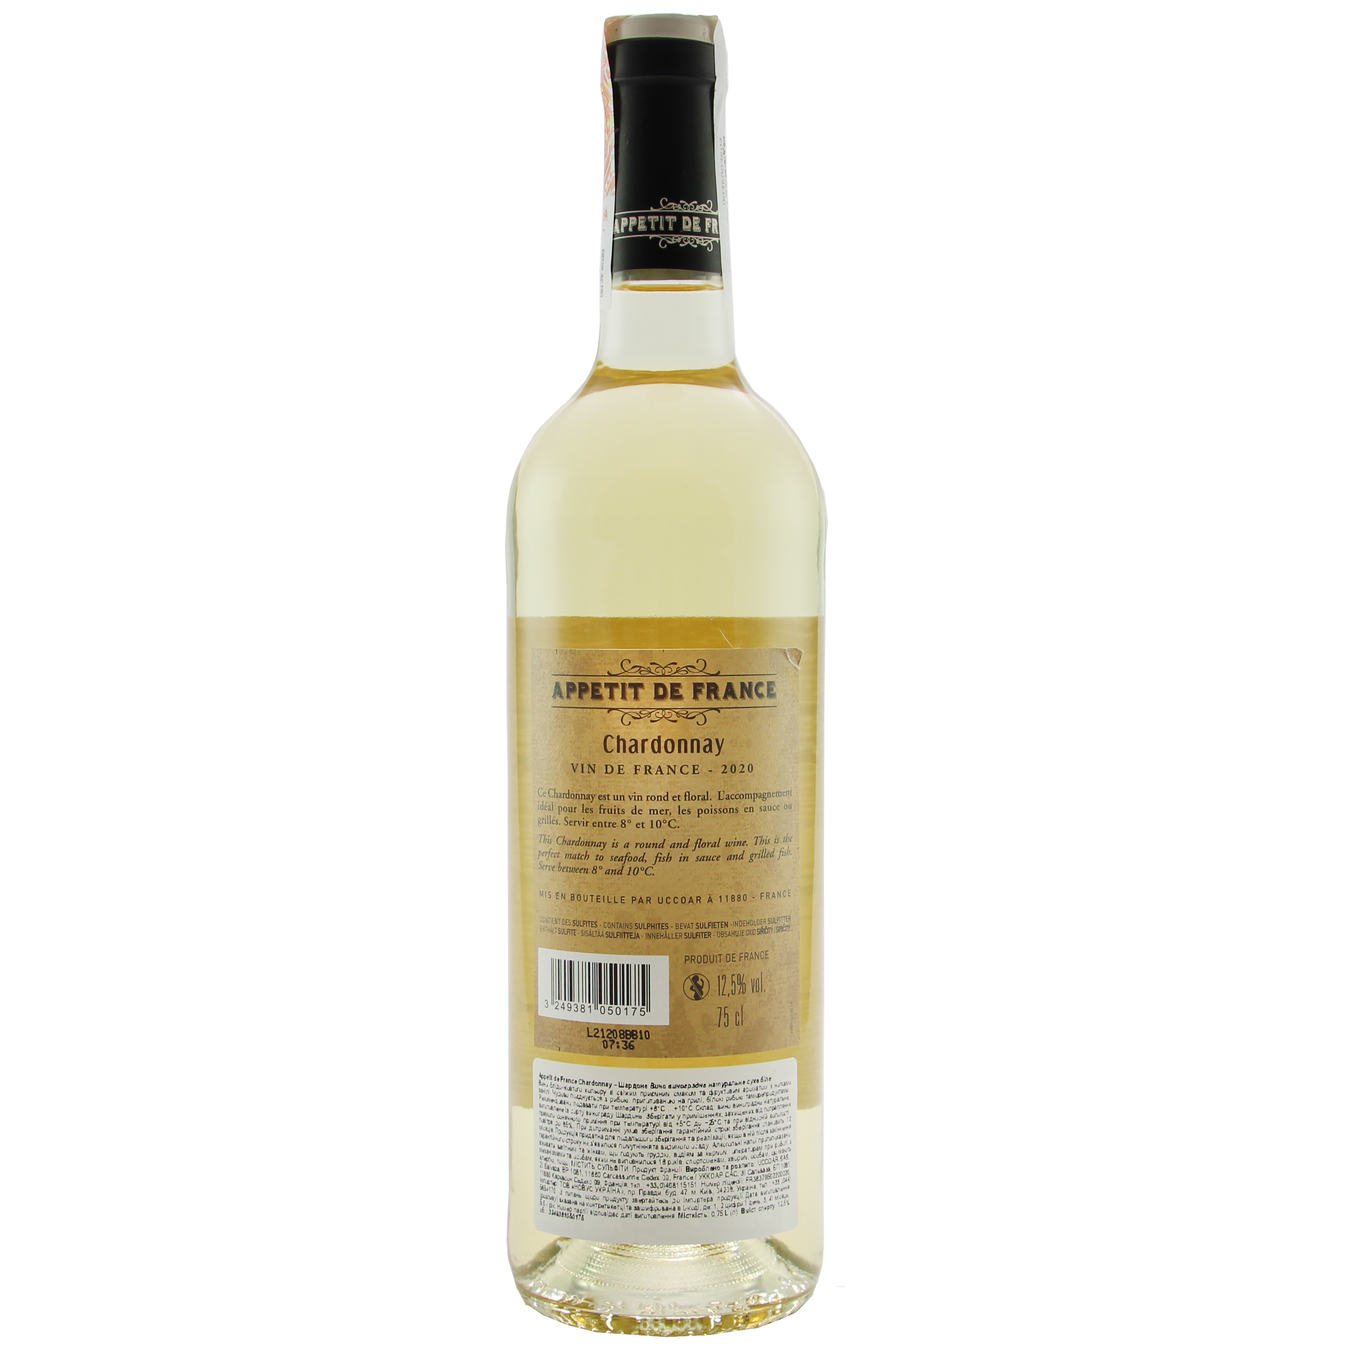 Appetit De France Chardonnay white dry wine 12,5% 0,75l 2